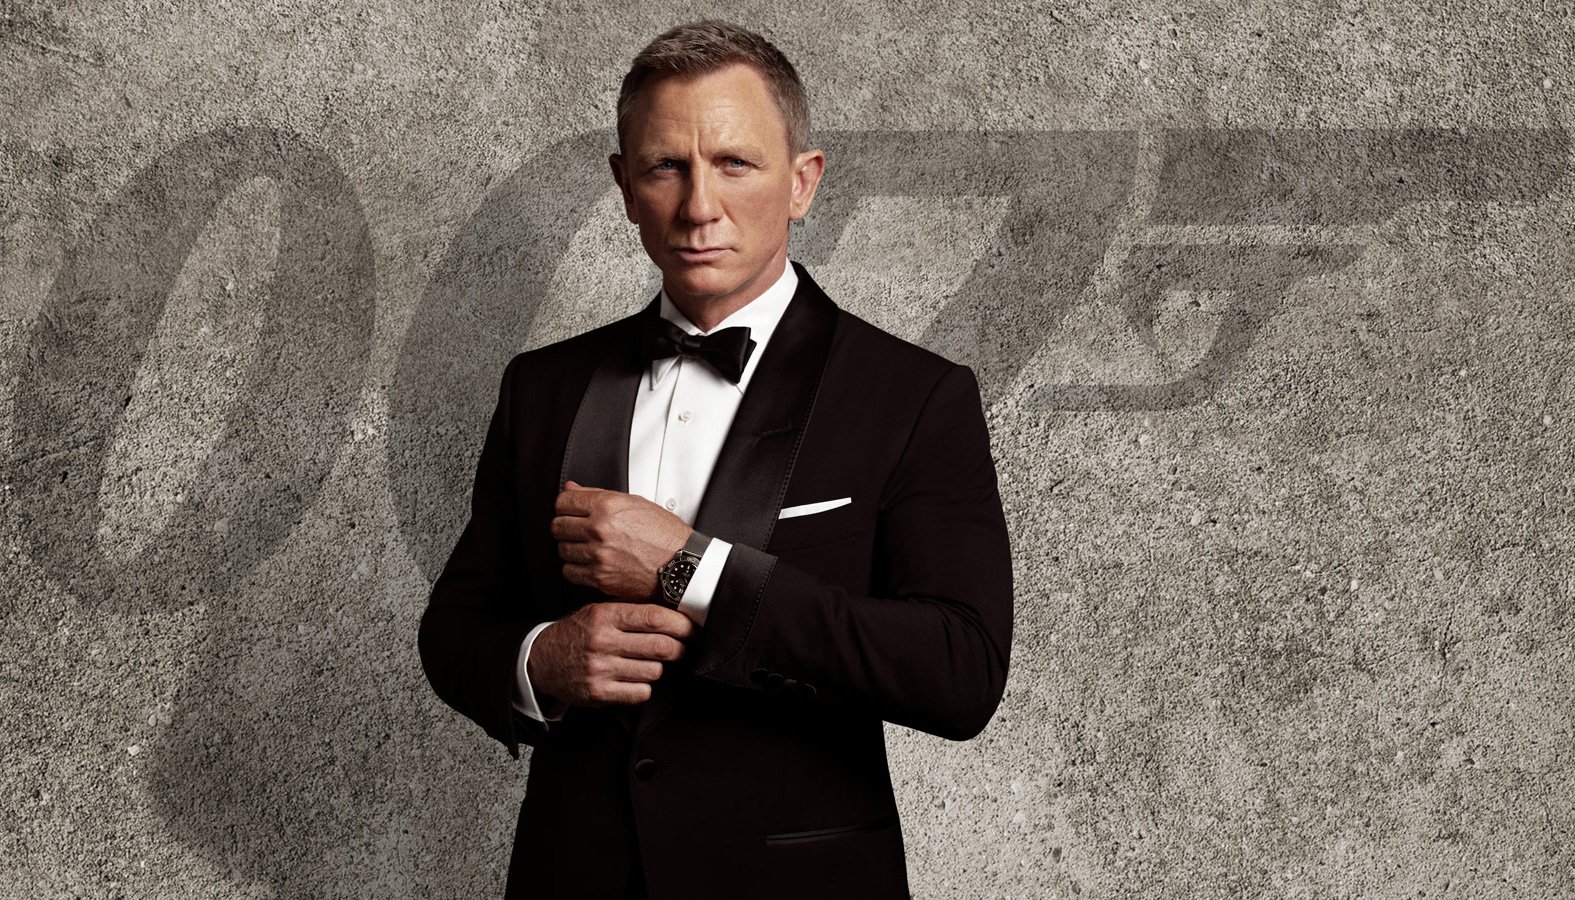 007 Movie T Shirt, No Time To Die Tshirt, James Bond T Shirt